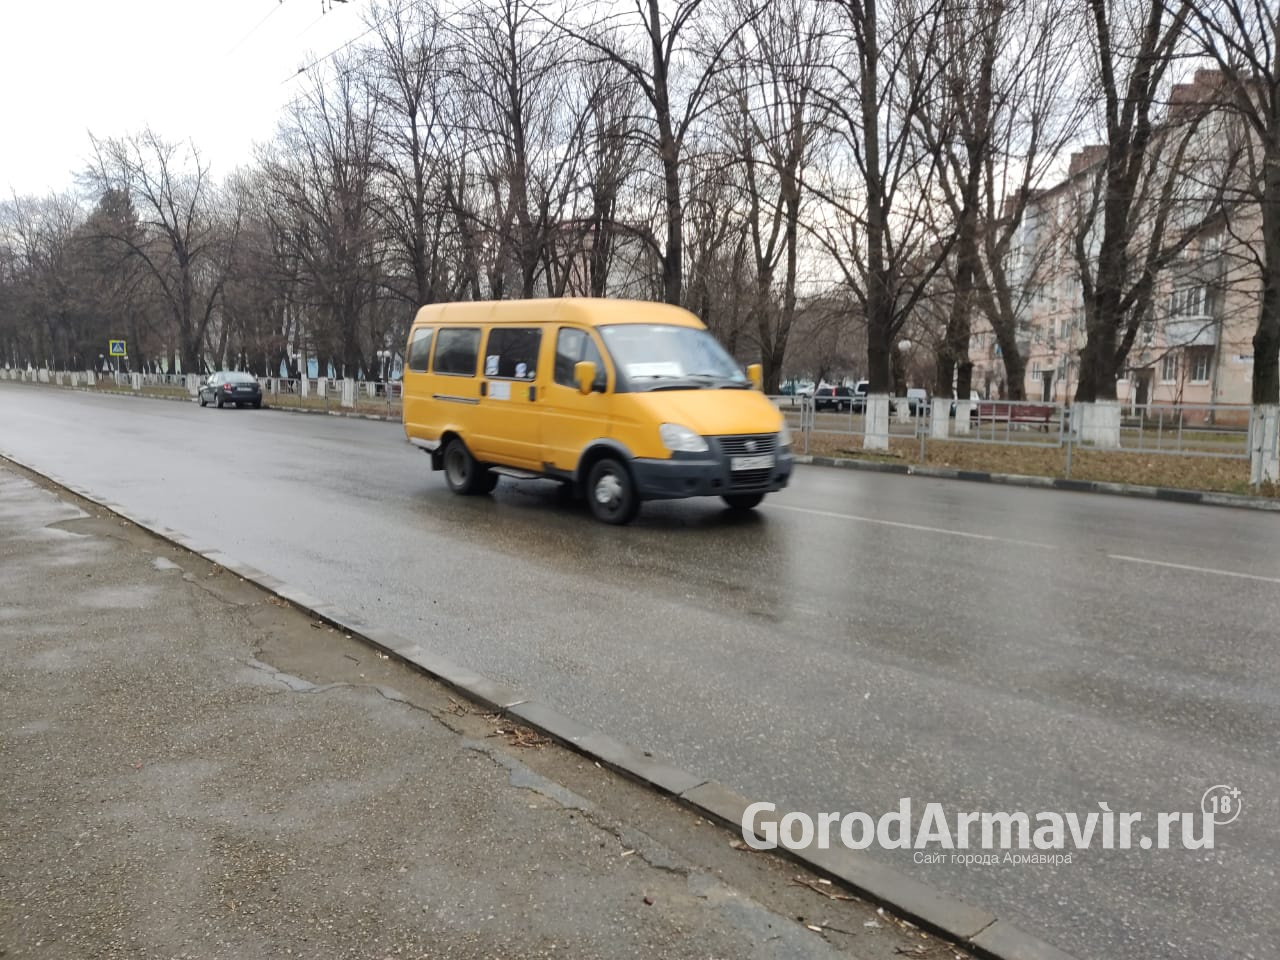 В Армавире до 30 руб поднимется стоимость проезда в маршрутных такси 